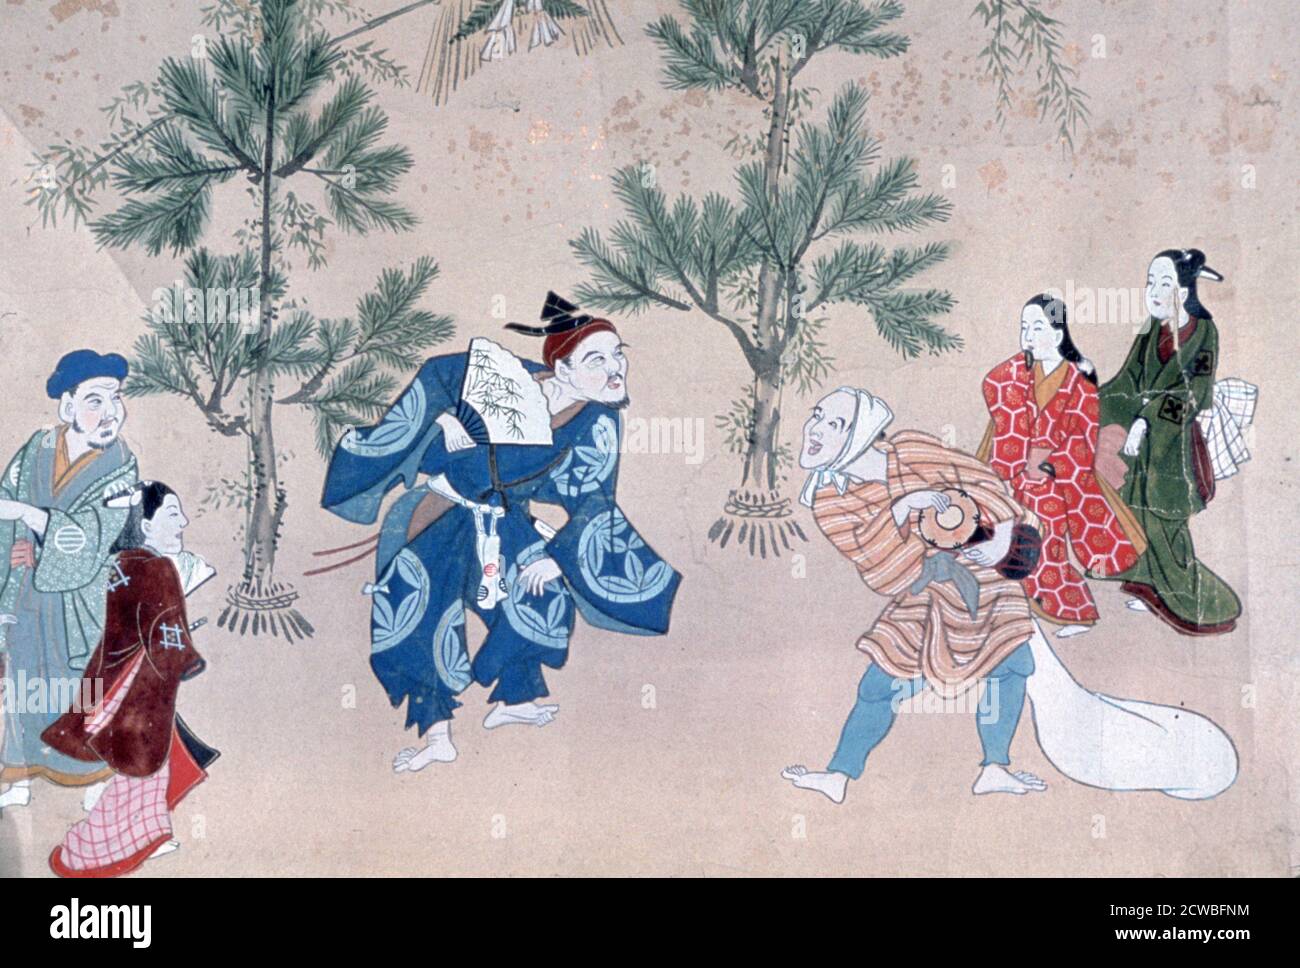 Events of the Year in the Floating World', 1695-1700. Künstler: Furuyama Moroshige. Furuyama Moroshige war ein japanischer Künstler aus dem 17. Jahrhundert, der während der Edo-Zeit vorherrschte. Stockfoto